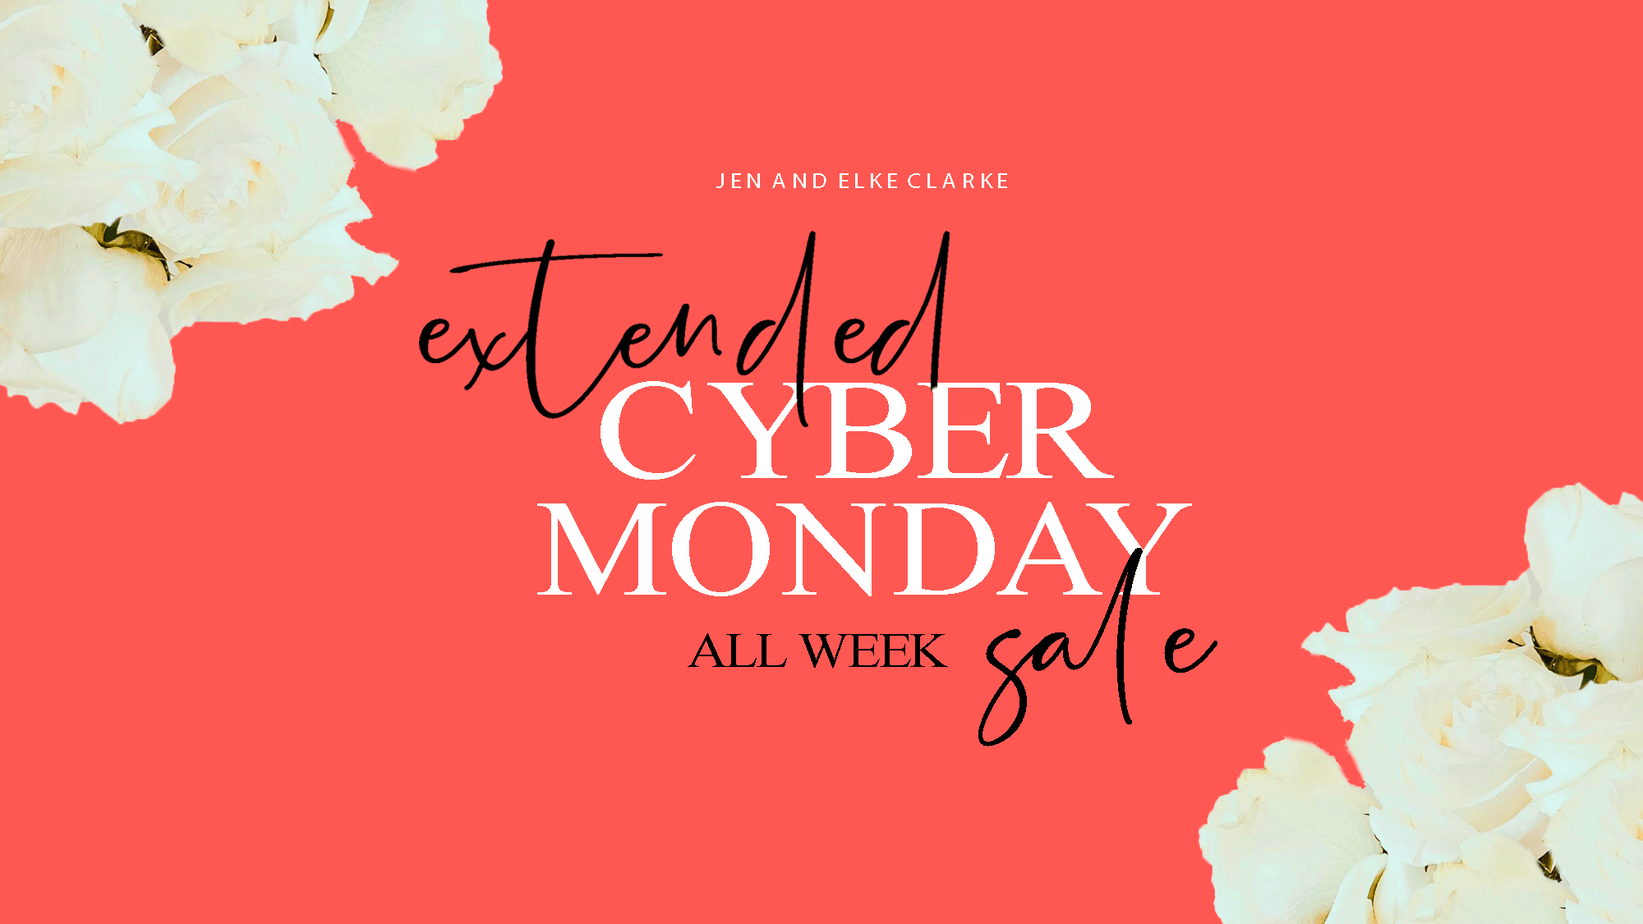 Cyber Monday Week Sales with Jen and Elke Clarke